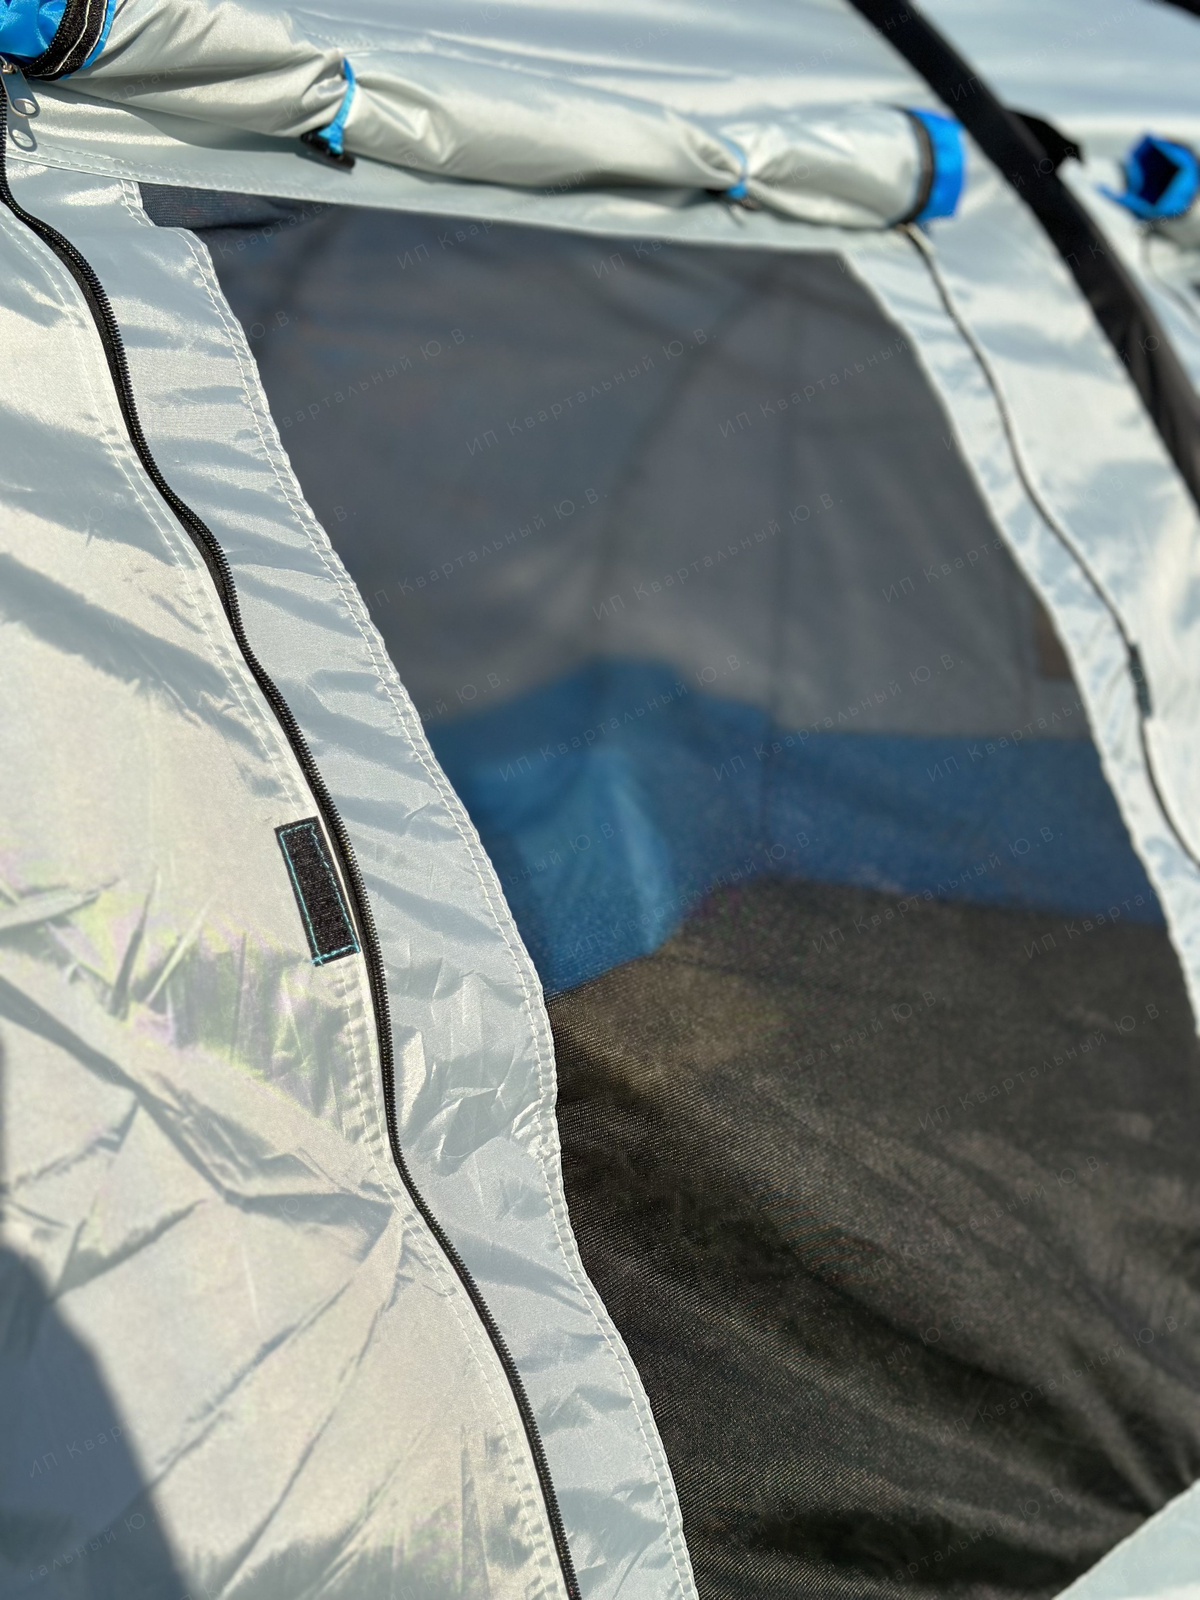 5 больших окон внешнего тента на молнии и оснащены москитными сетками. Создают светлое пространство внутри. Также, благодаря им в палатке отличная вентиляция.